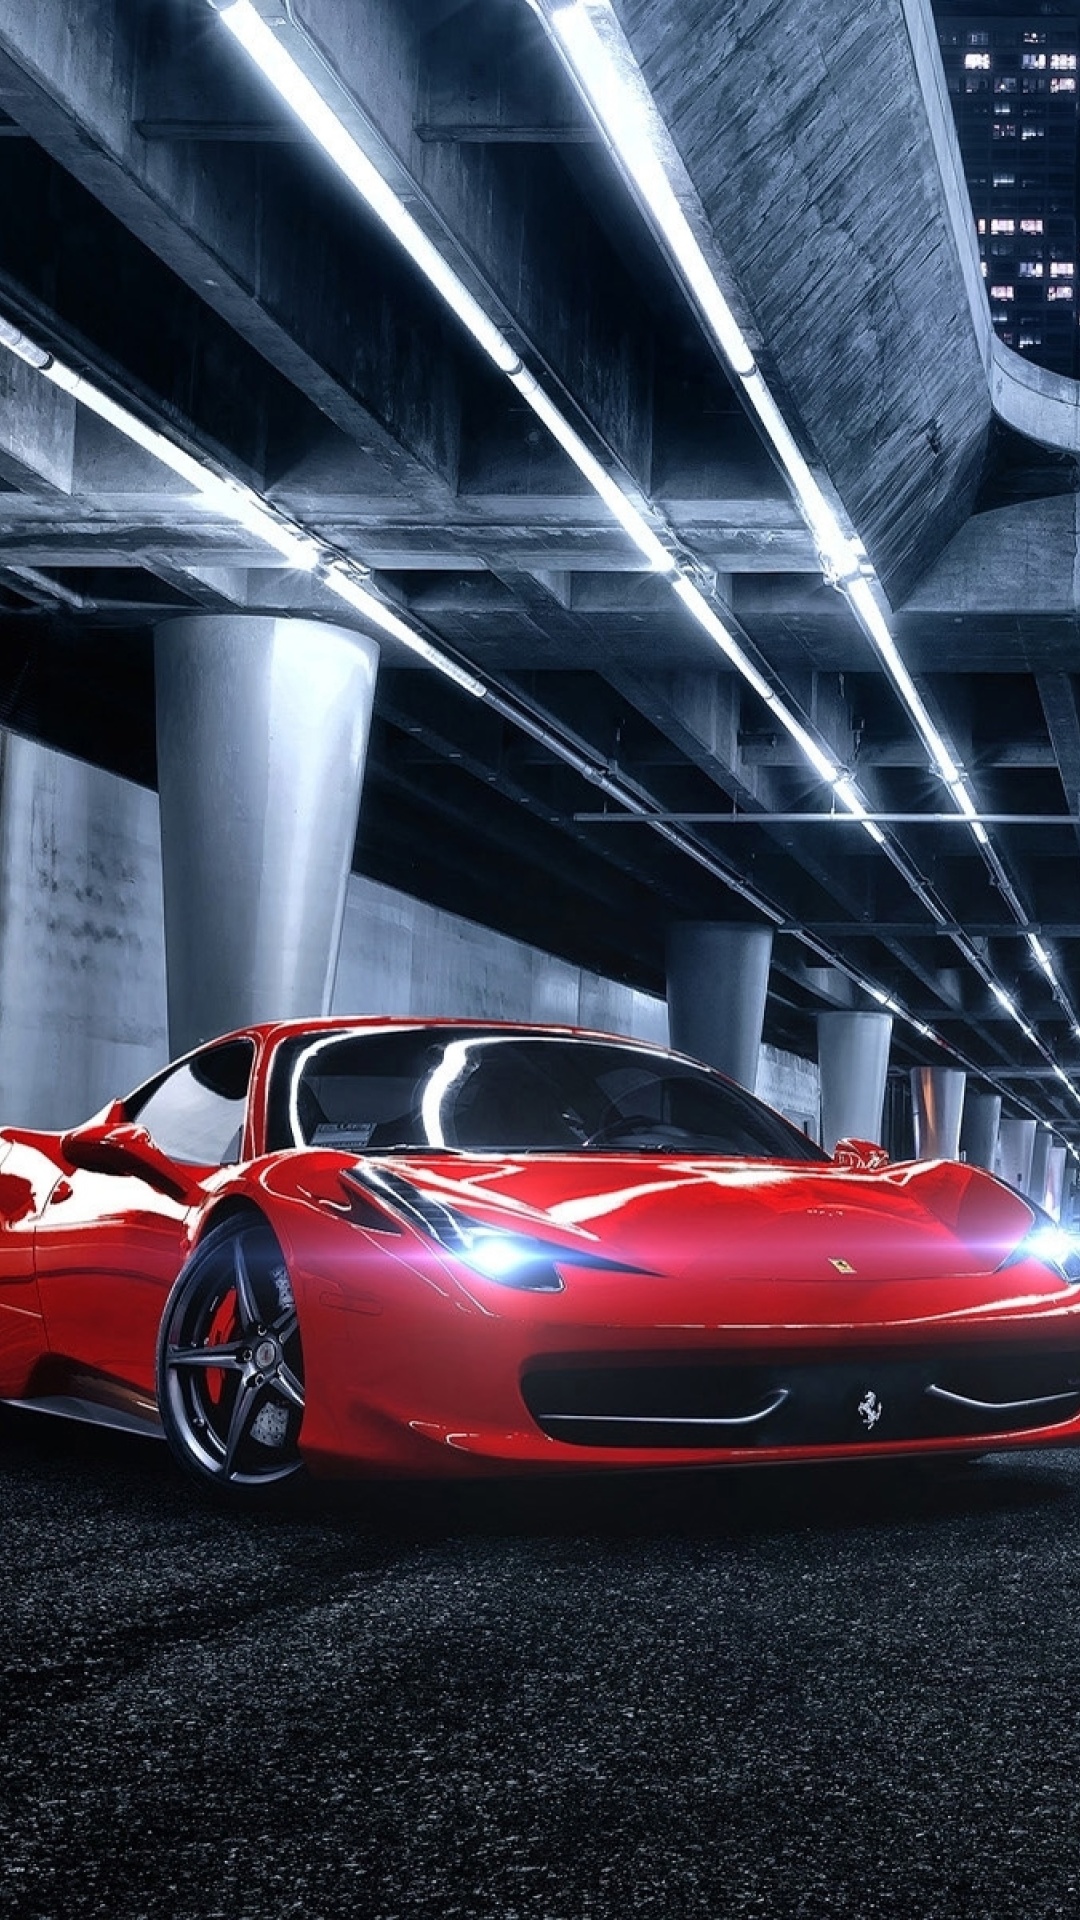 Das Ferrari compare Maserati Wallpaper 1080x1920